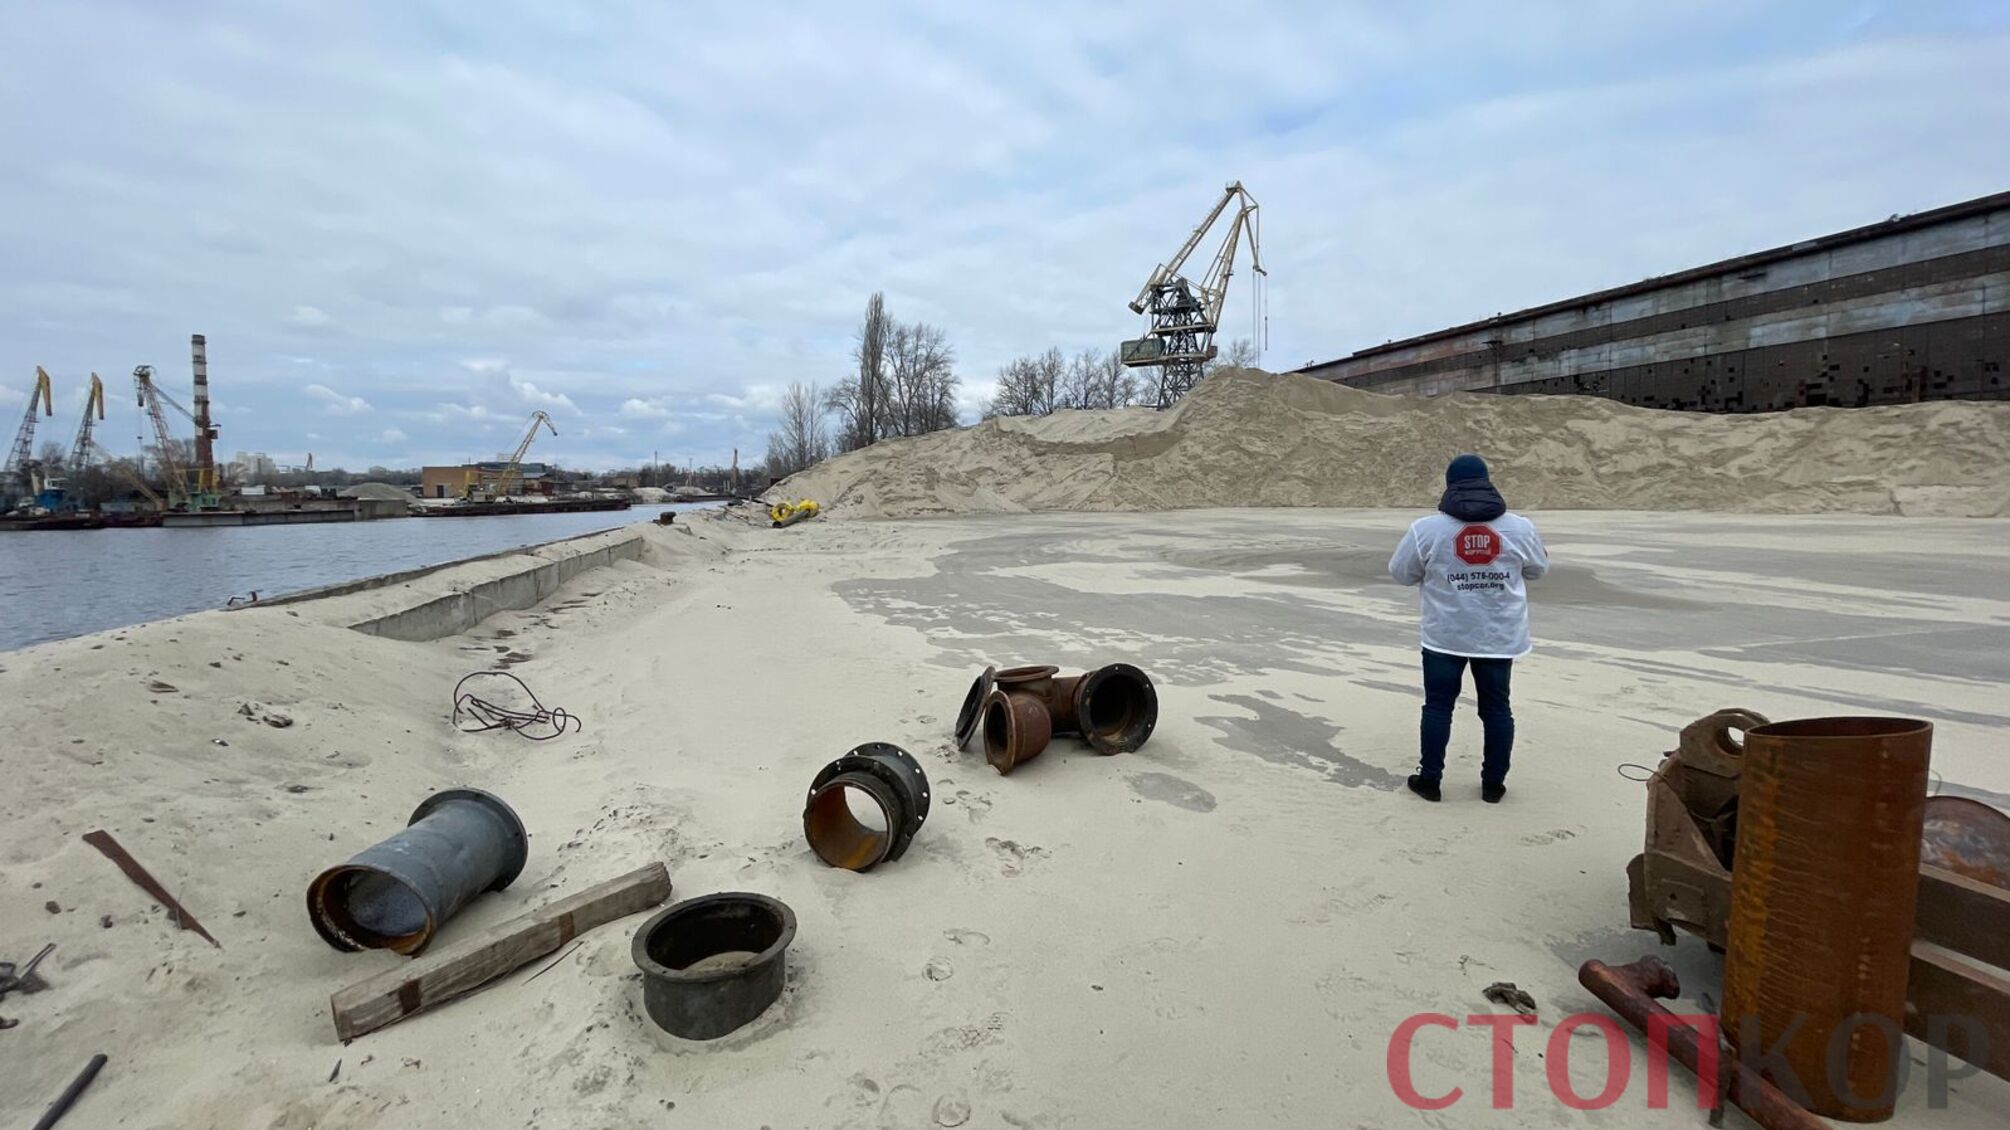 Победа активистов: люди Злочевского освободили захваченный земельный участок 'Кузницы на Рыбальском' (видео)